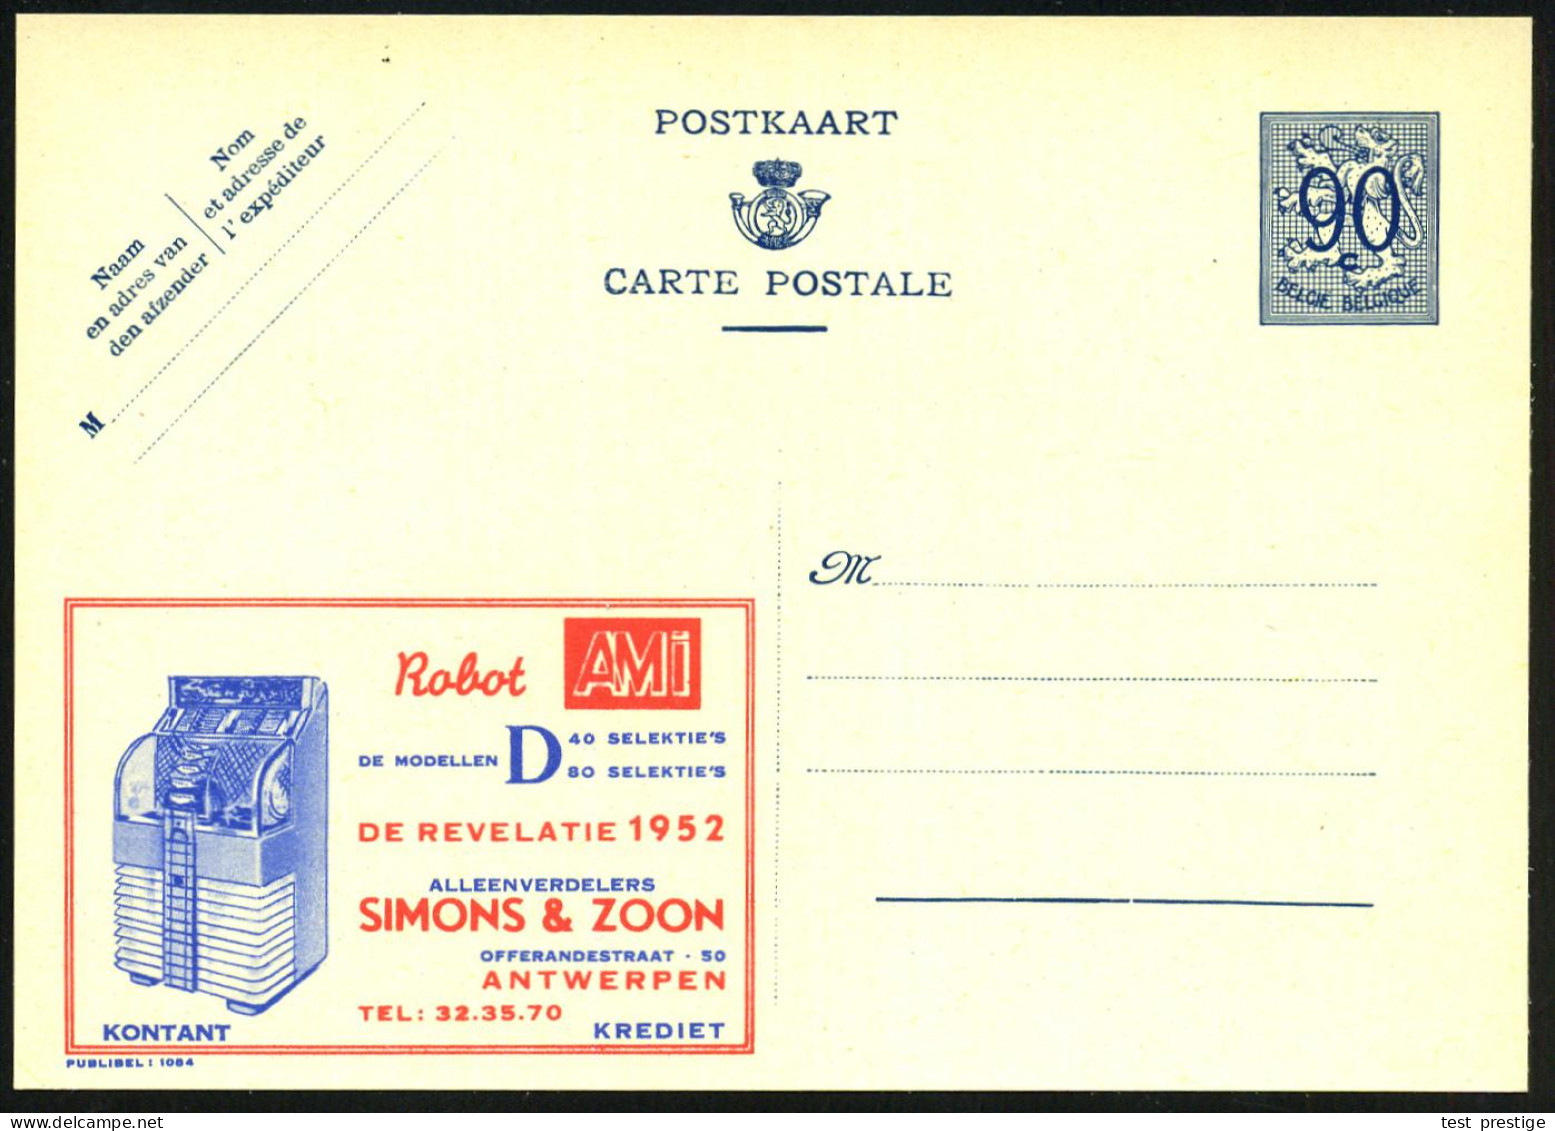 BELGIEN 1952 90 C. Reklame-P. Löwe, Blau: Robit AMI.. = Jukebox (mit Sichtfenster) Ungebr., Seltenes Motiv!  (Mi.P 273 I - Musik